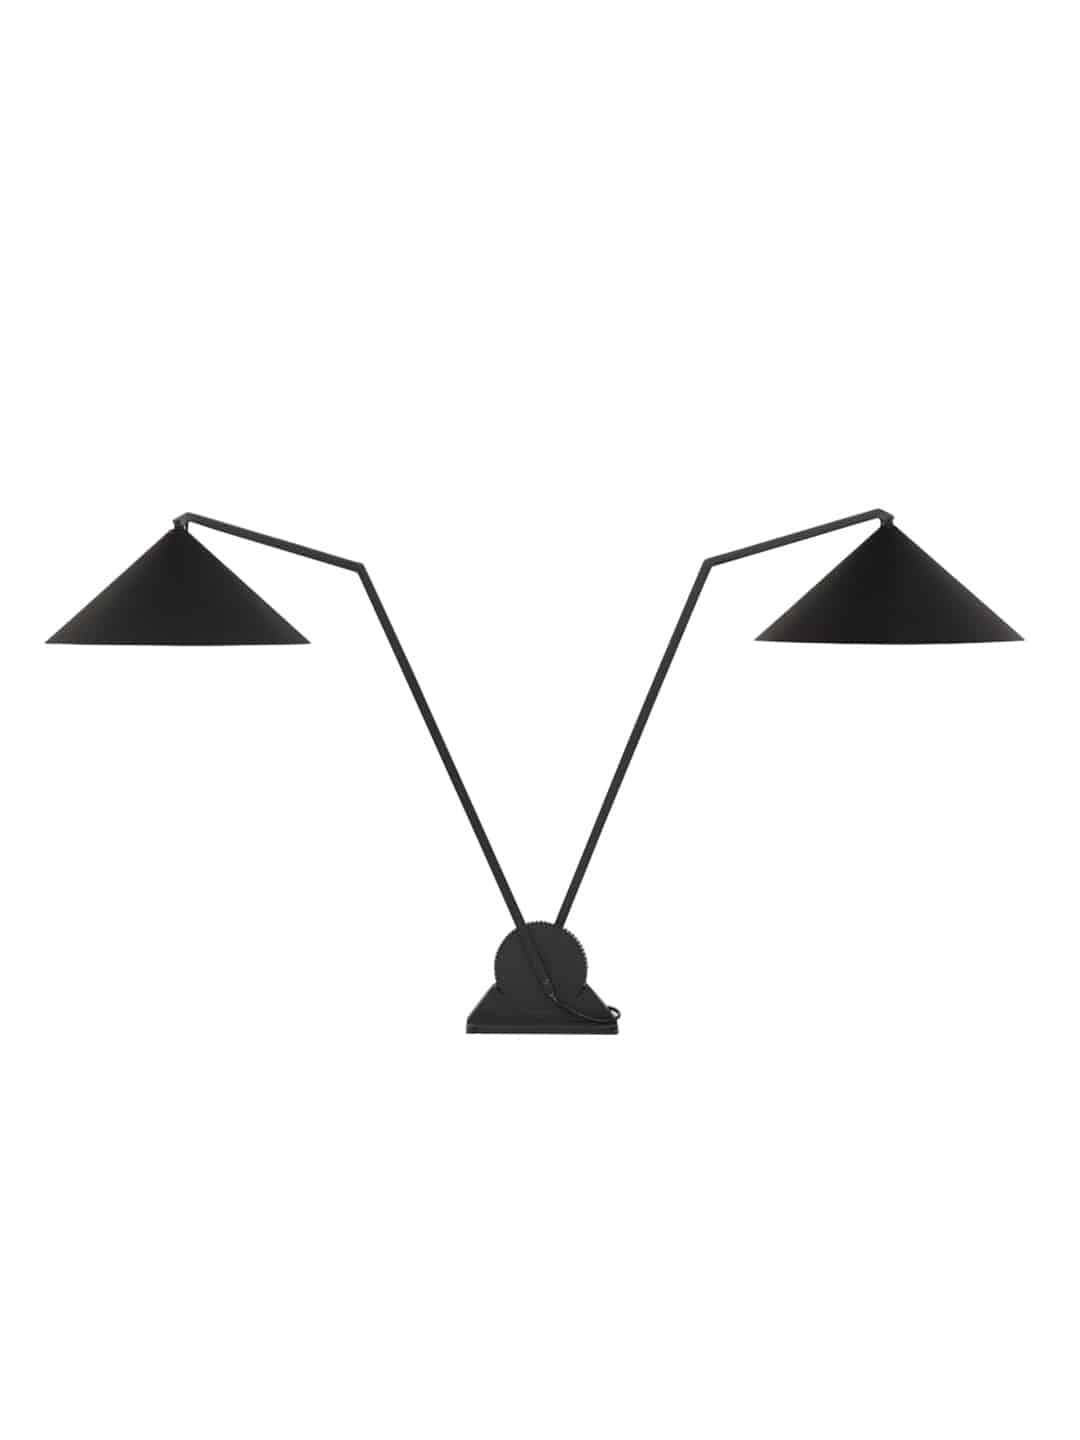 Оригинальный настольная лампа Northern Gear с двумя абажурами черного цвета